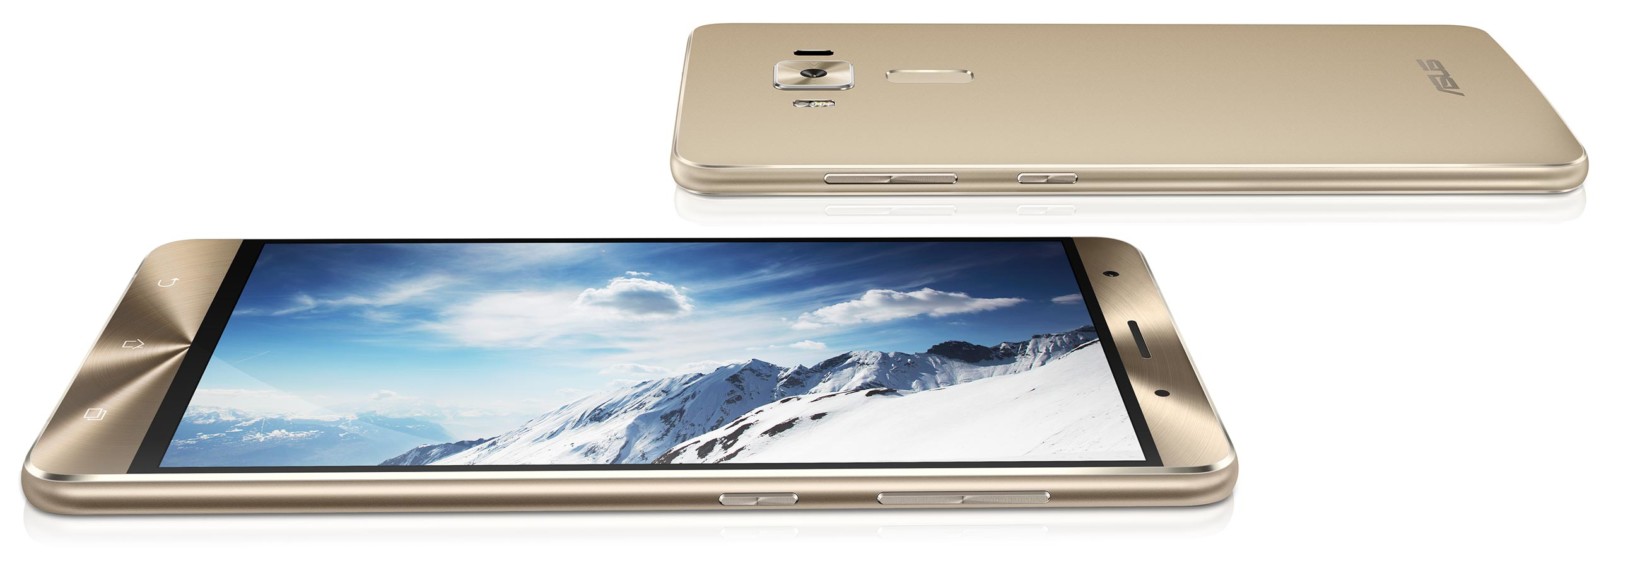 Anuncian el primer smartphone con el nuevo procesador Snapdragon 821: ASUS Zenfone 3 Deluxe